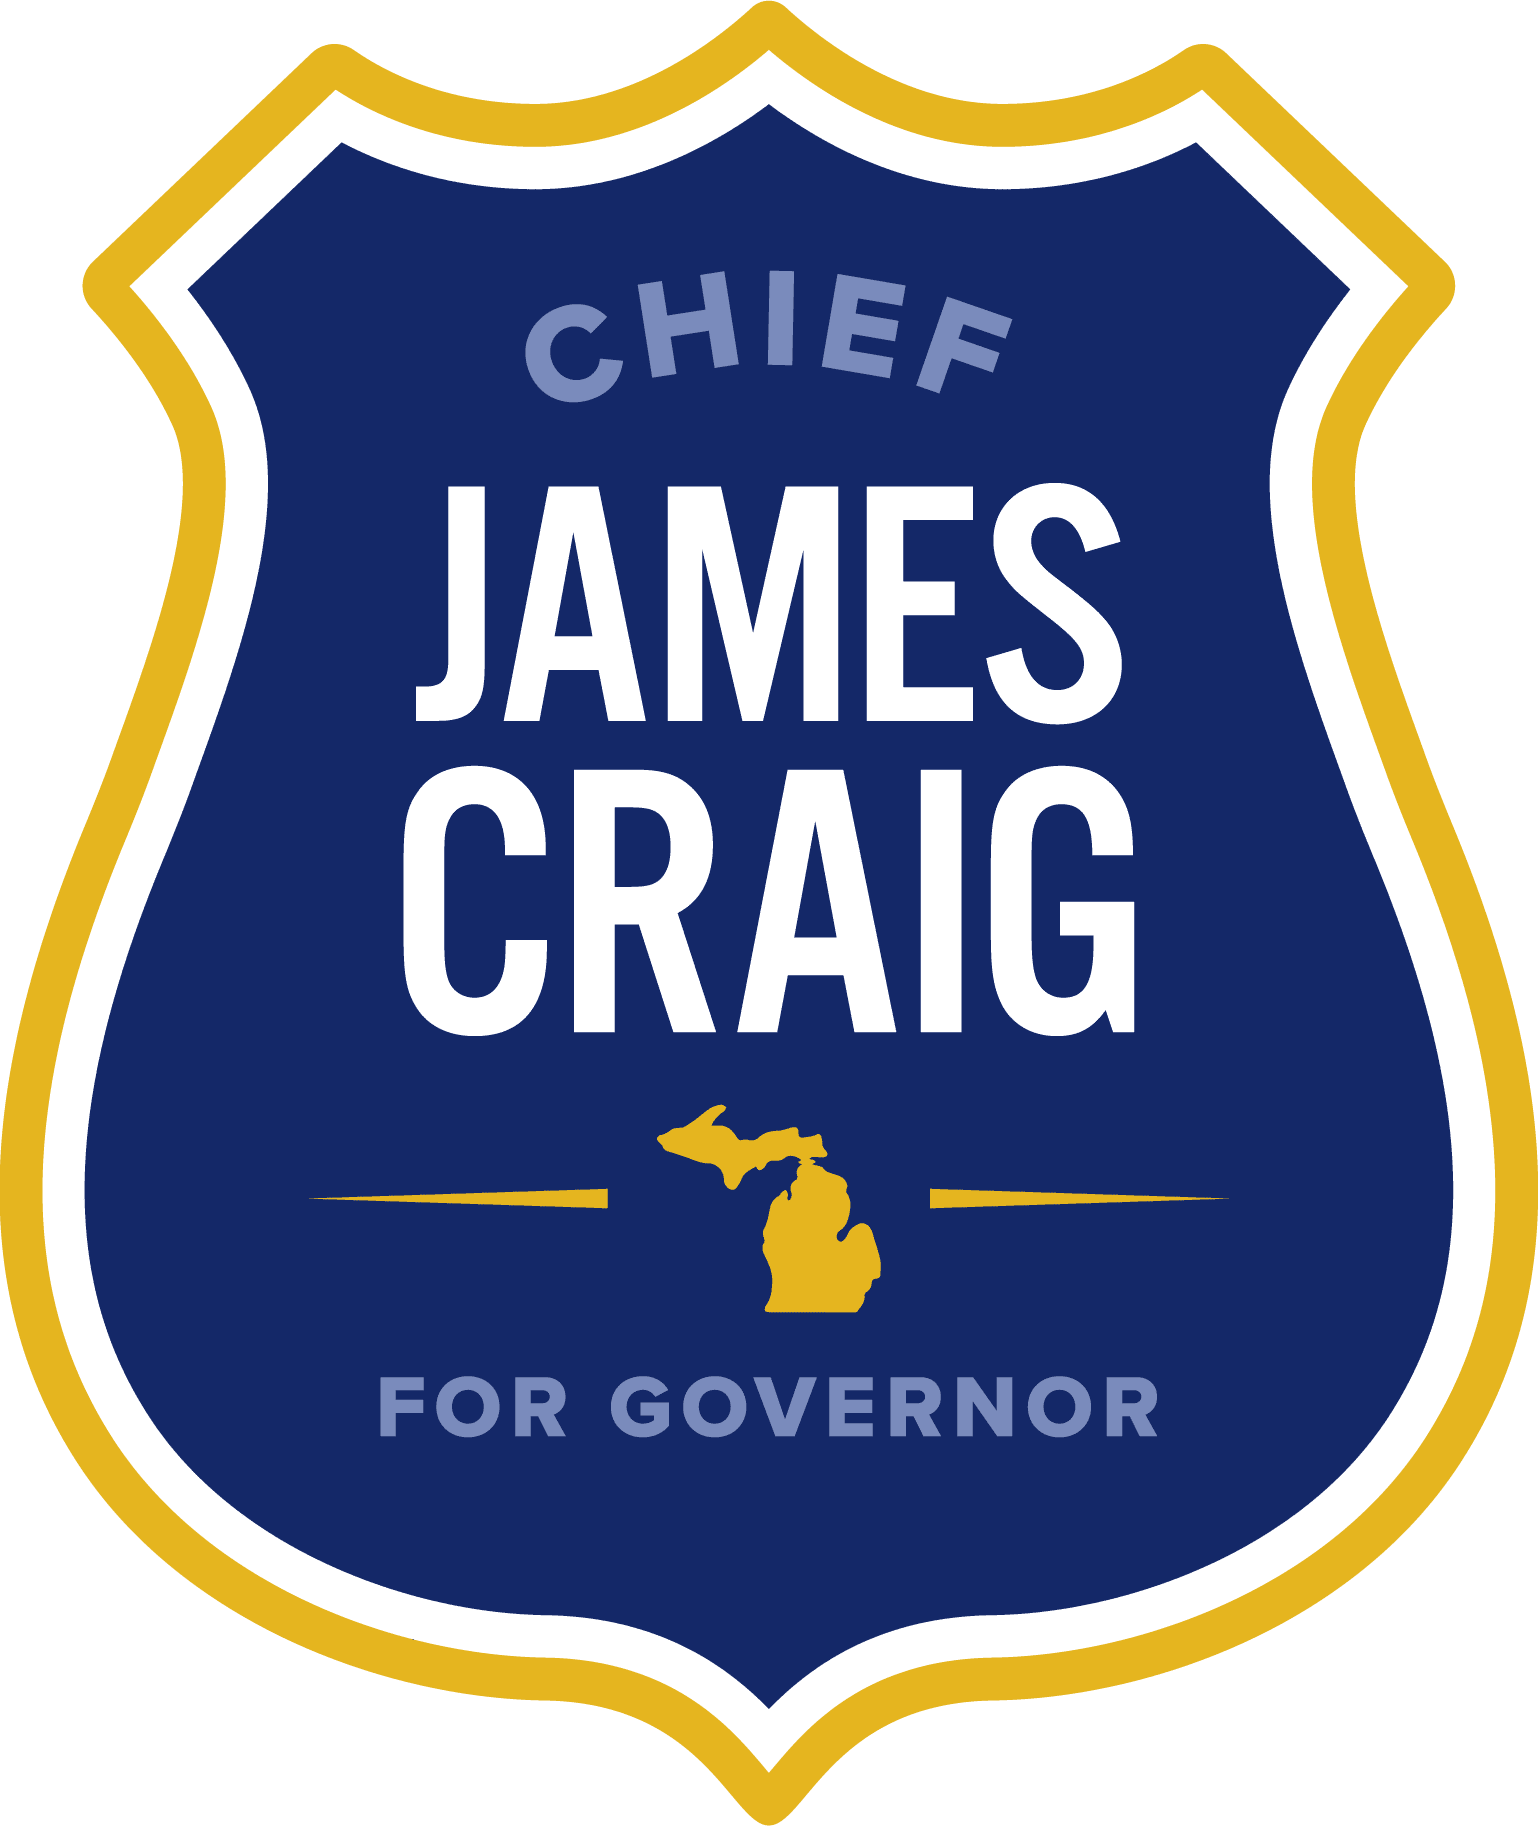 Chief James Craig for Governor